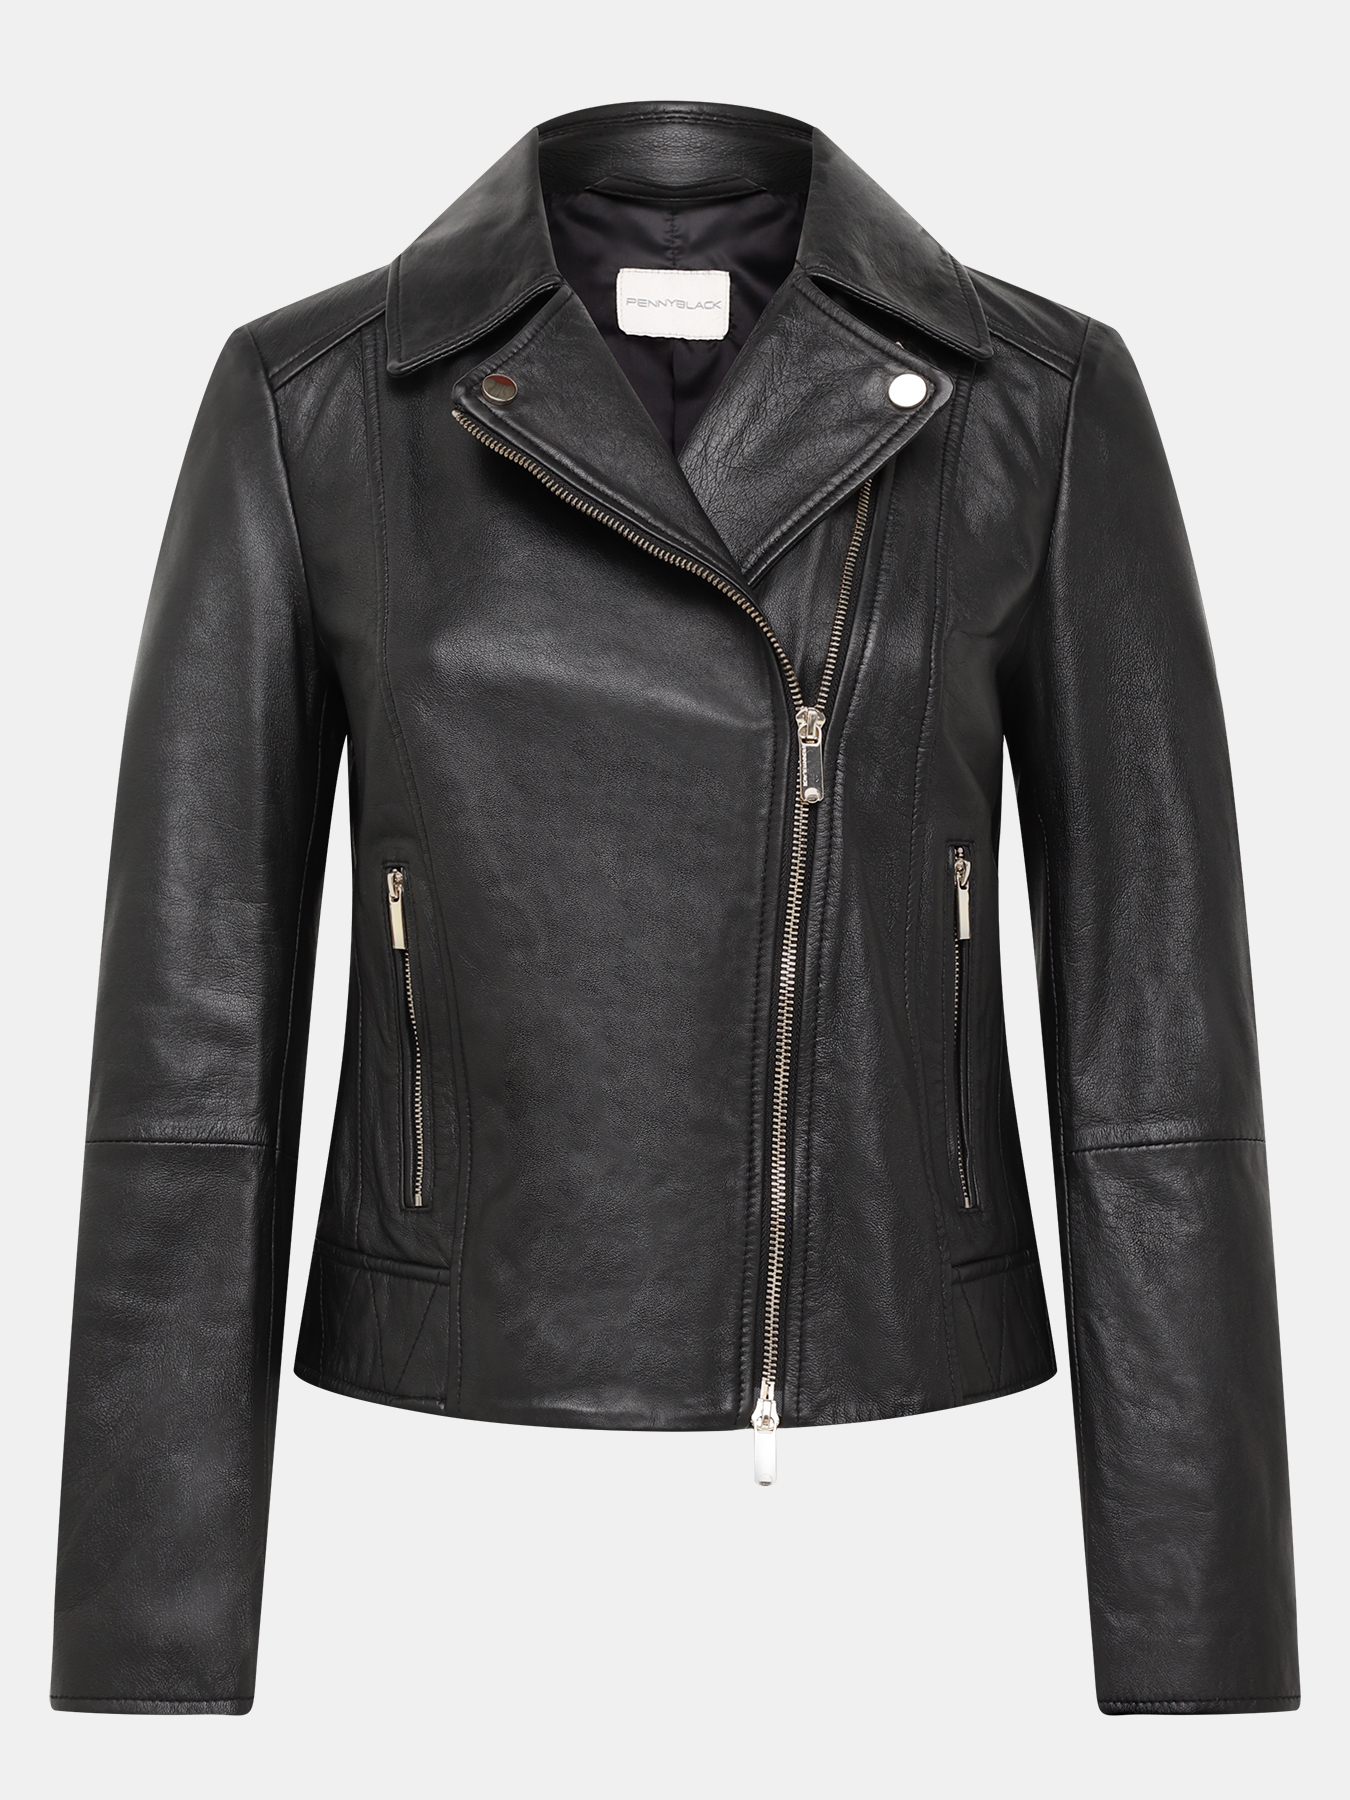 Кожаная куртка Pennyblack 421362-023, цвет черный, размер 46